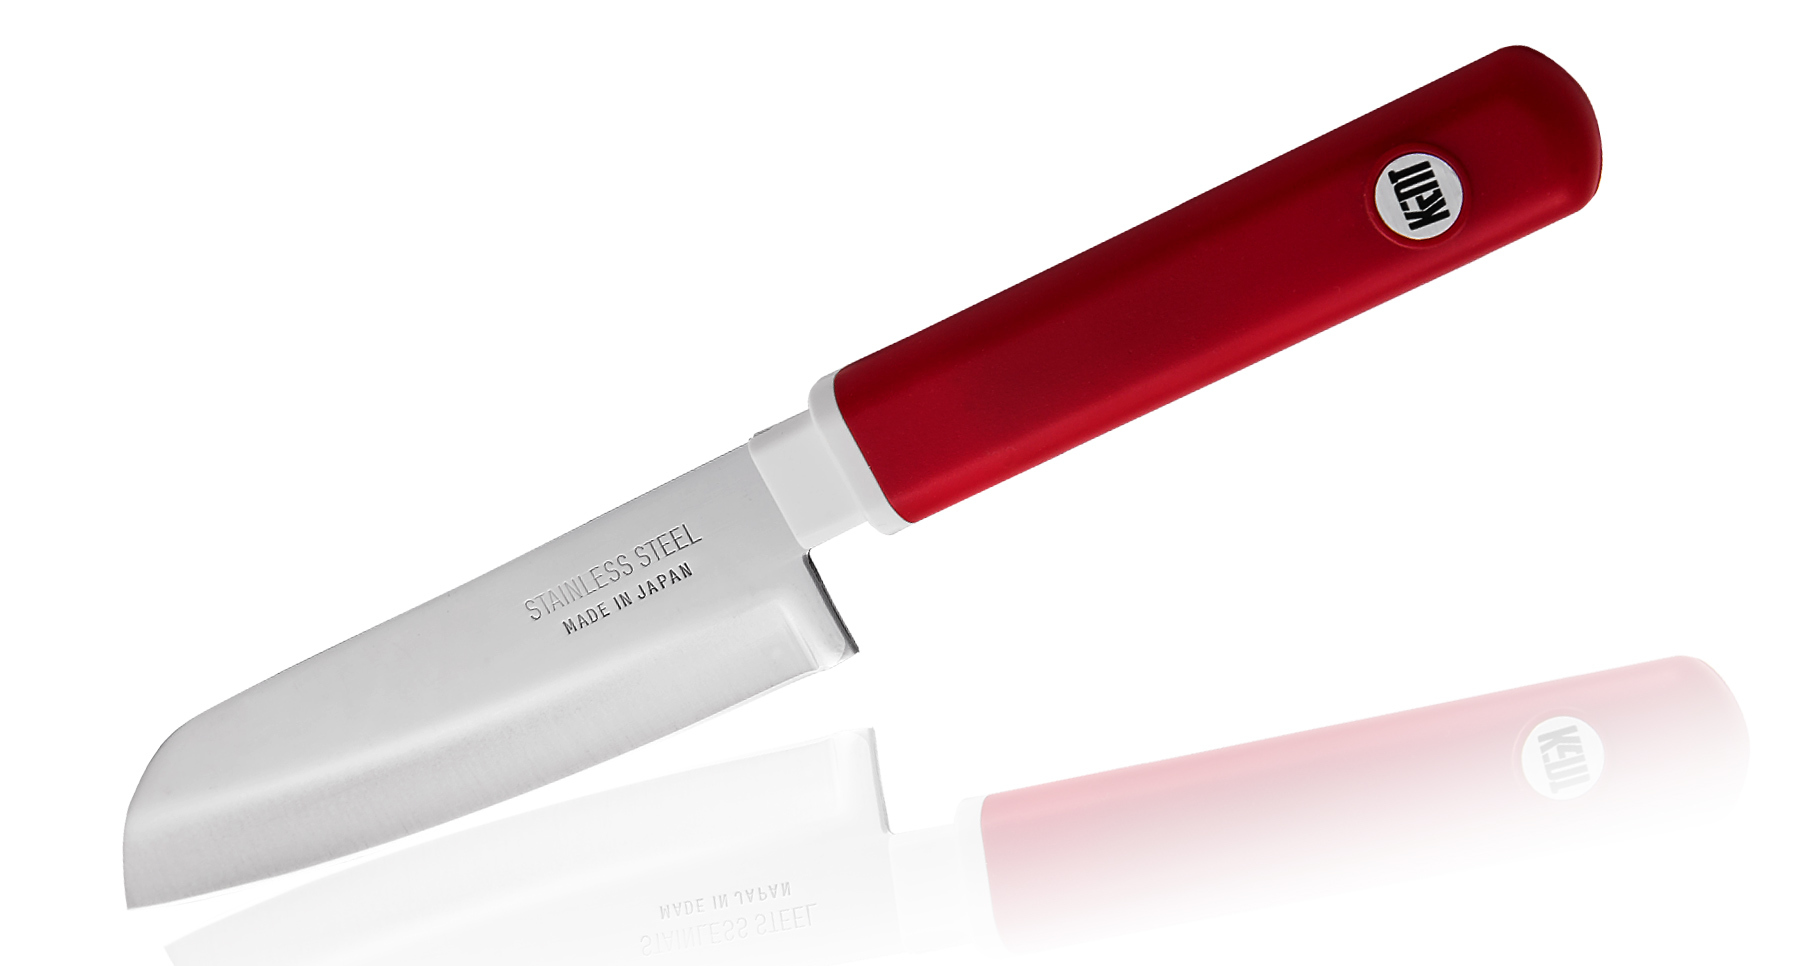 нож кухонный xin cutlery xc103 utility knife Кухонный нож овощной, Special Series, Fuji Cutlery, FК-403, сталь Sus420J2, красный